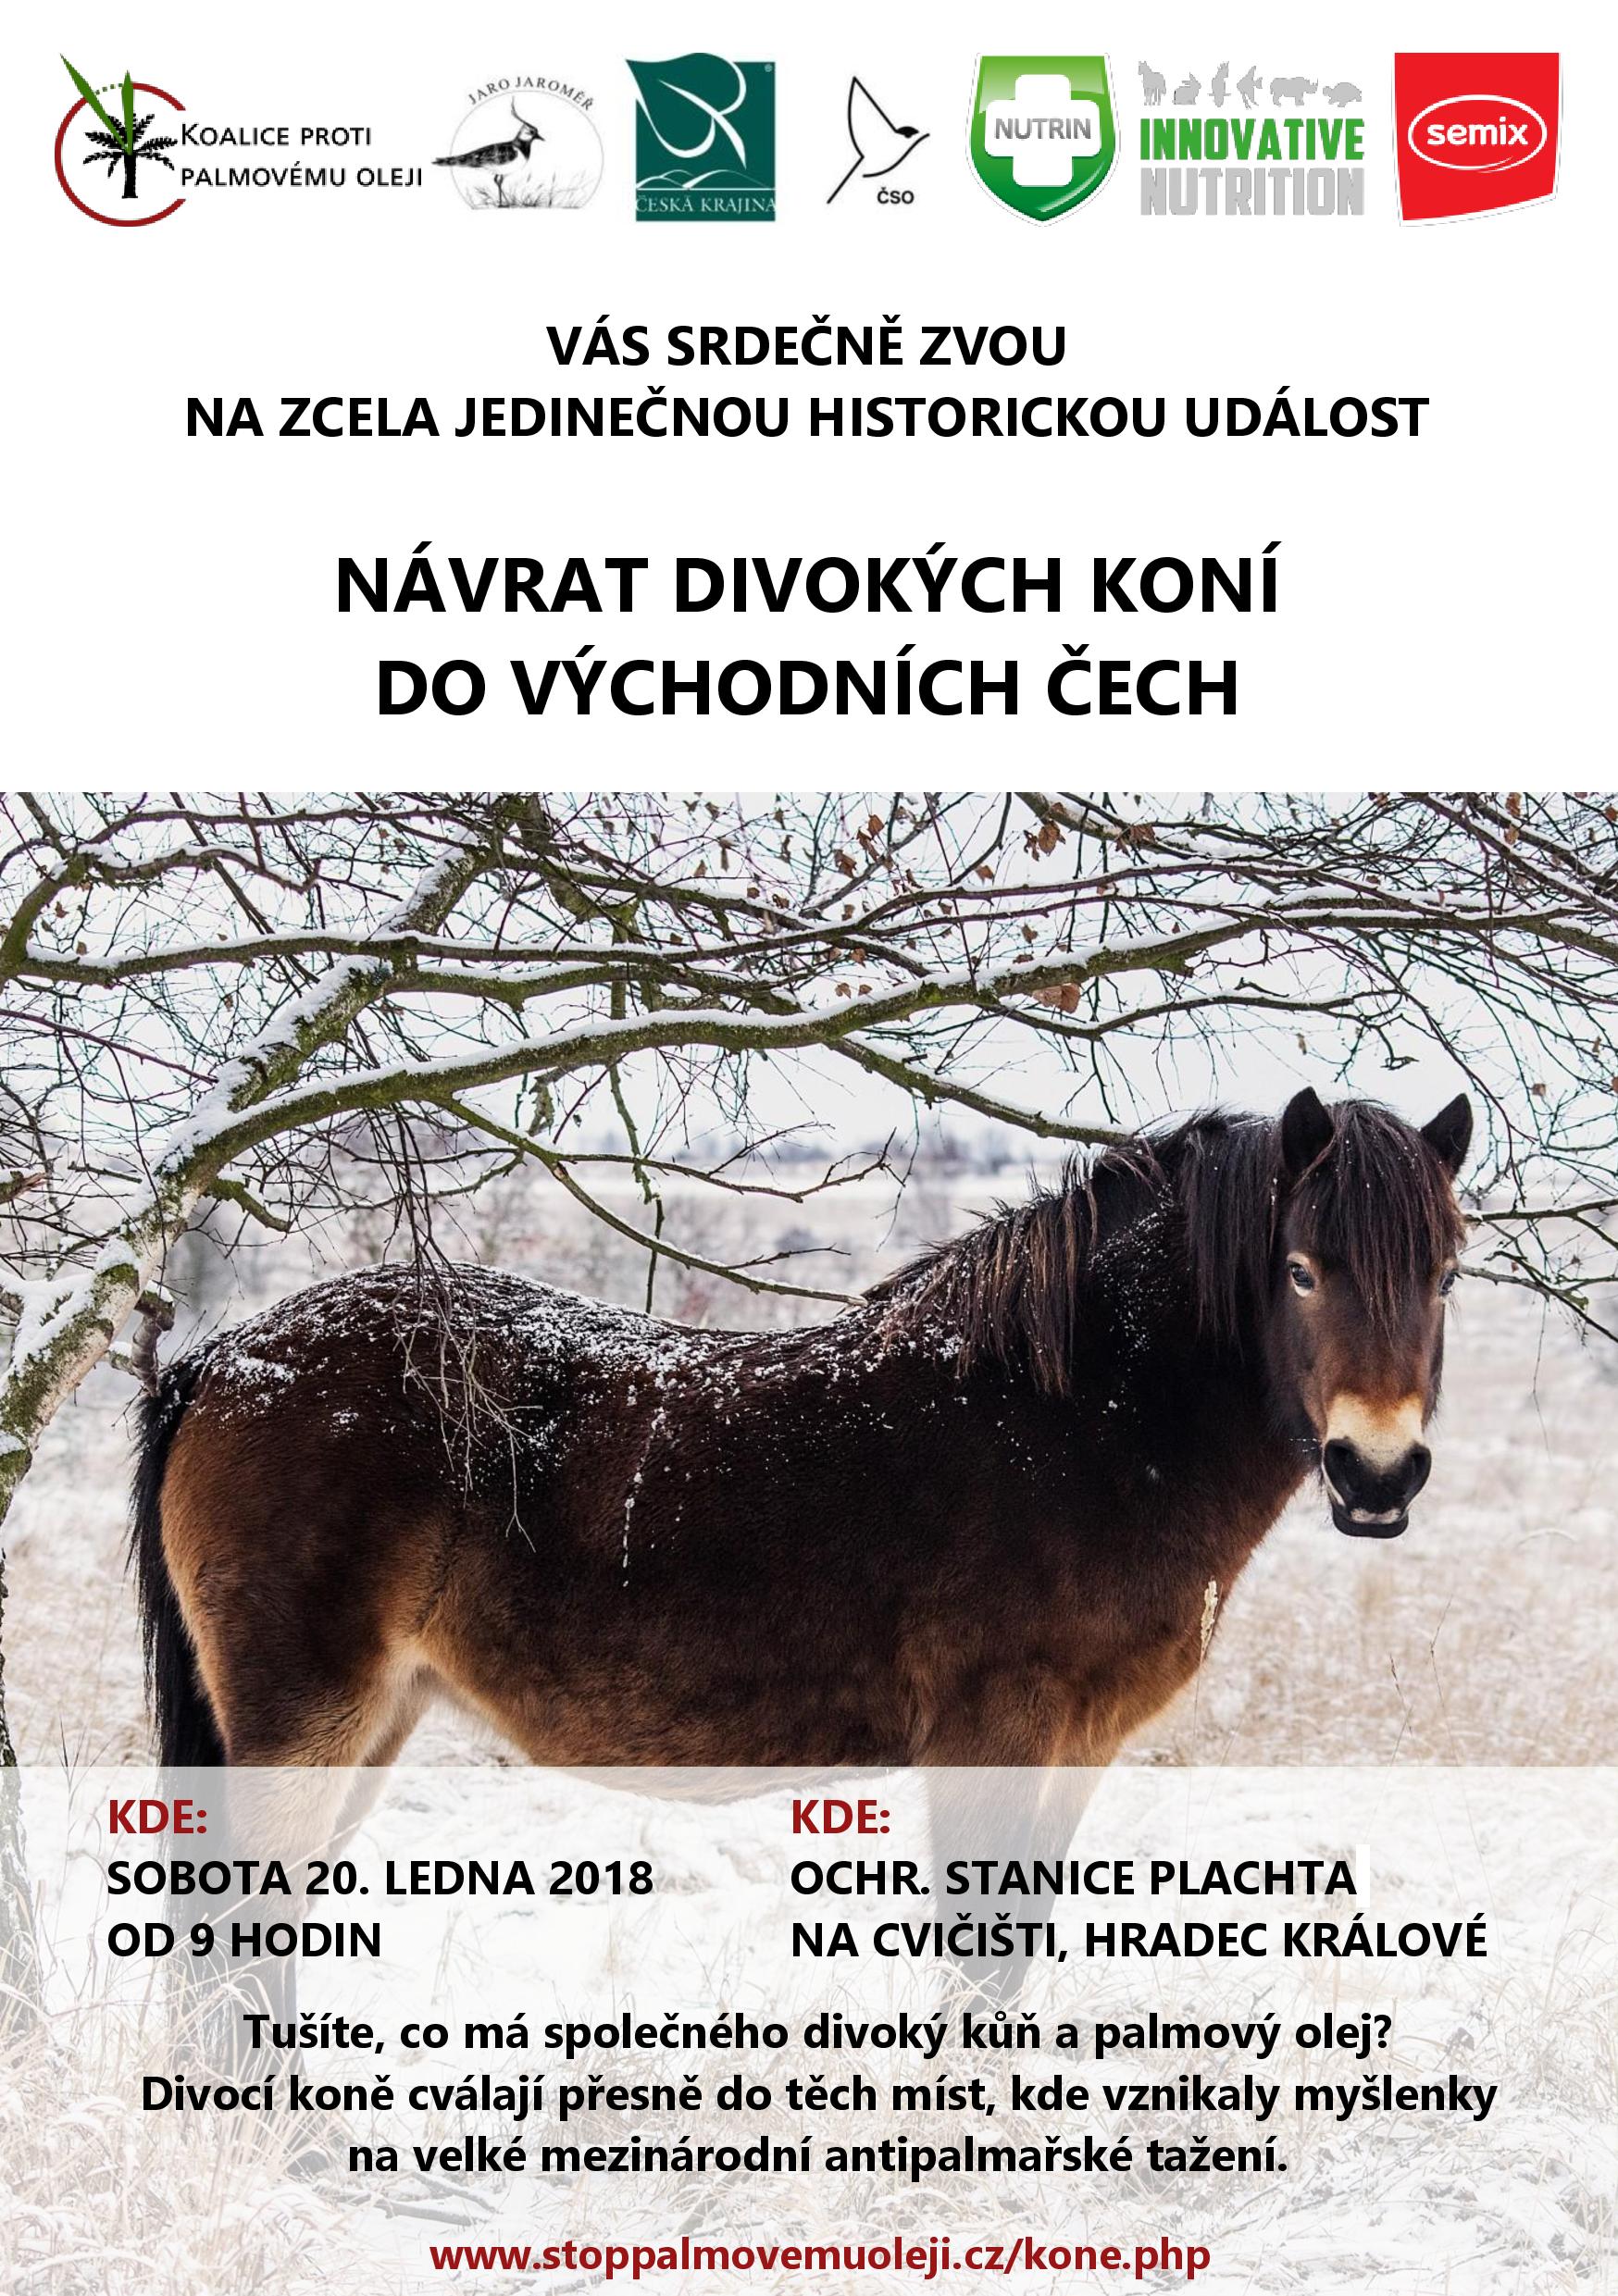 Návrat divokých koní do východních Čech